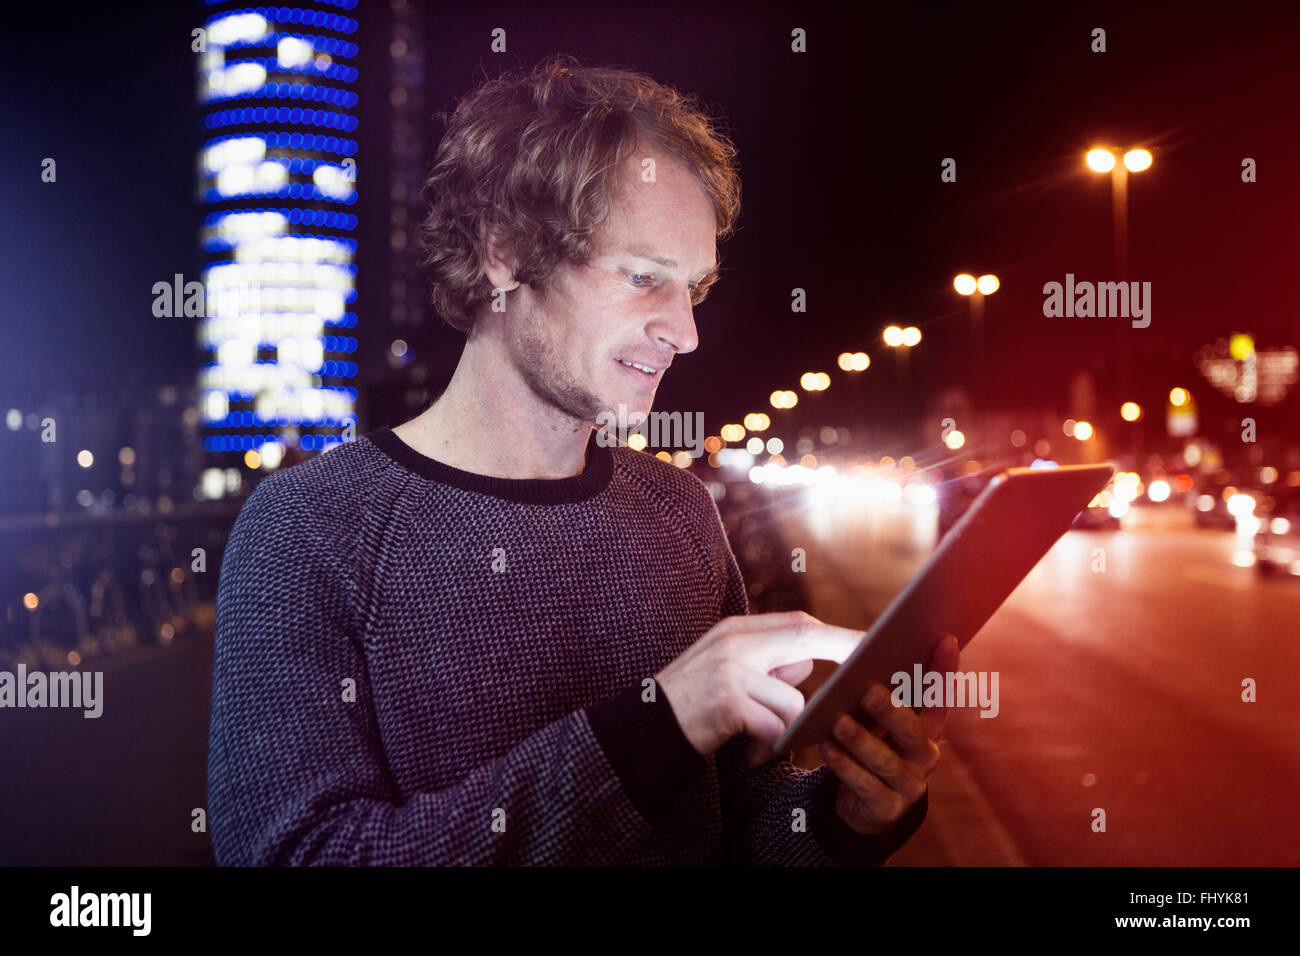 Germania - Monaco, ritratto di uomo con tavoletta digitale di notte Foto Stock